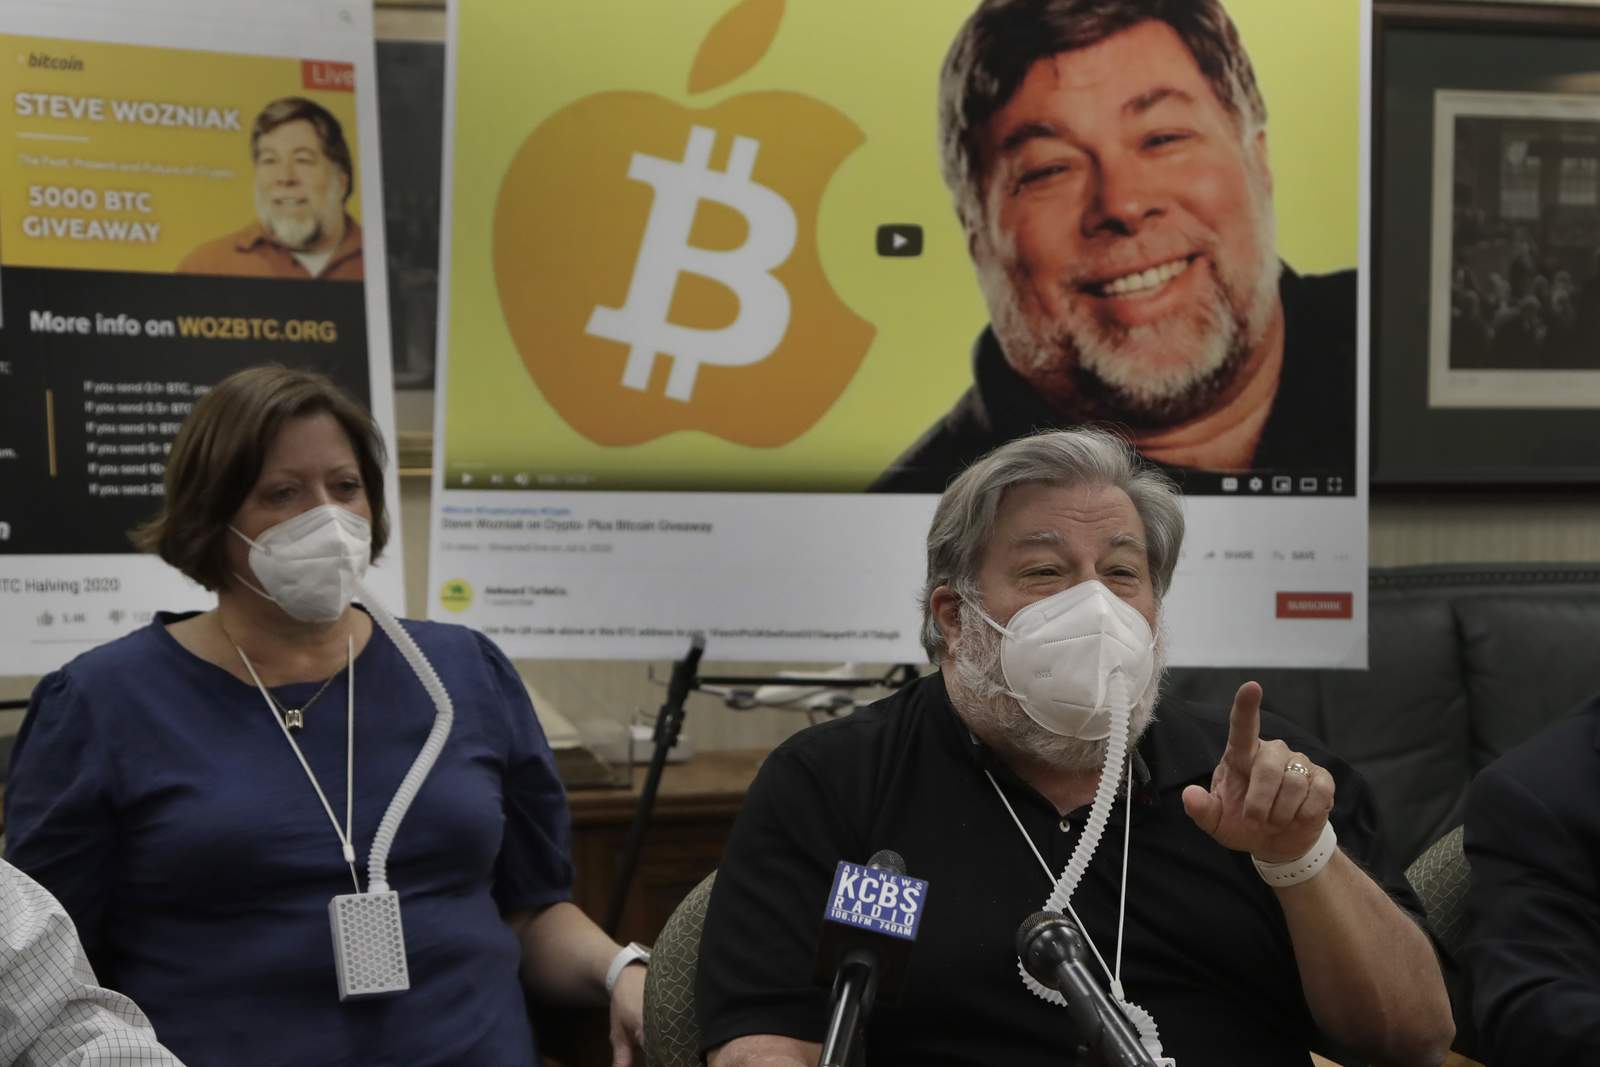 Apple co-founder Steve Wozniak slams YouTube for scam videos